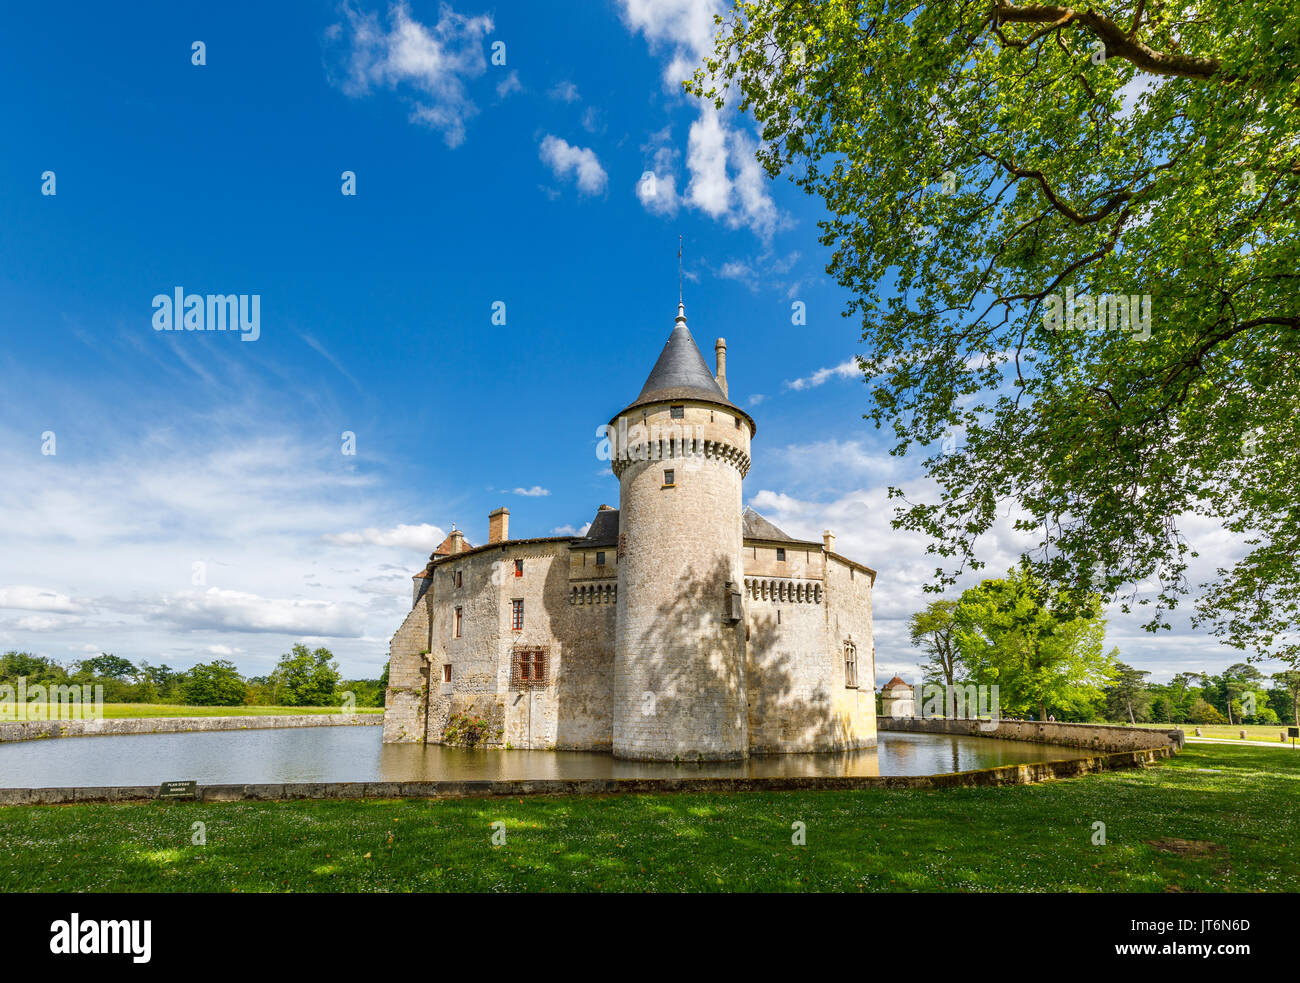 Château de la Brède, un château féodal sur la commune de La Brède dans le département de la Gironde, le sud-ouest de la France, l'accueil du philosophe Montesquieu Banque D'Images